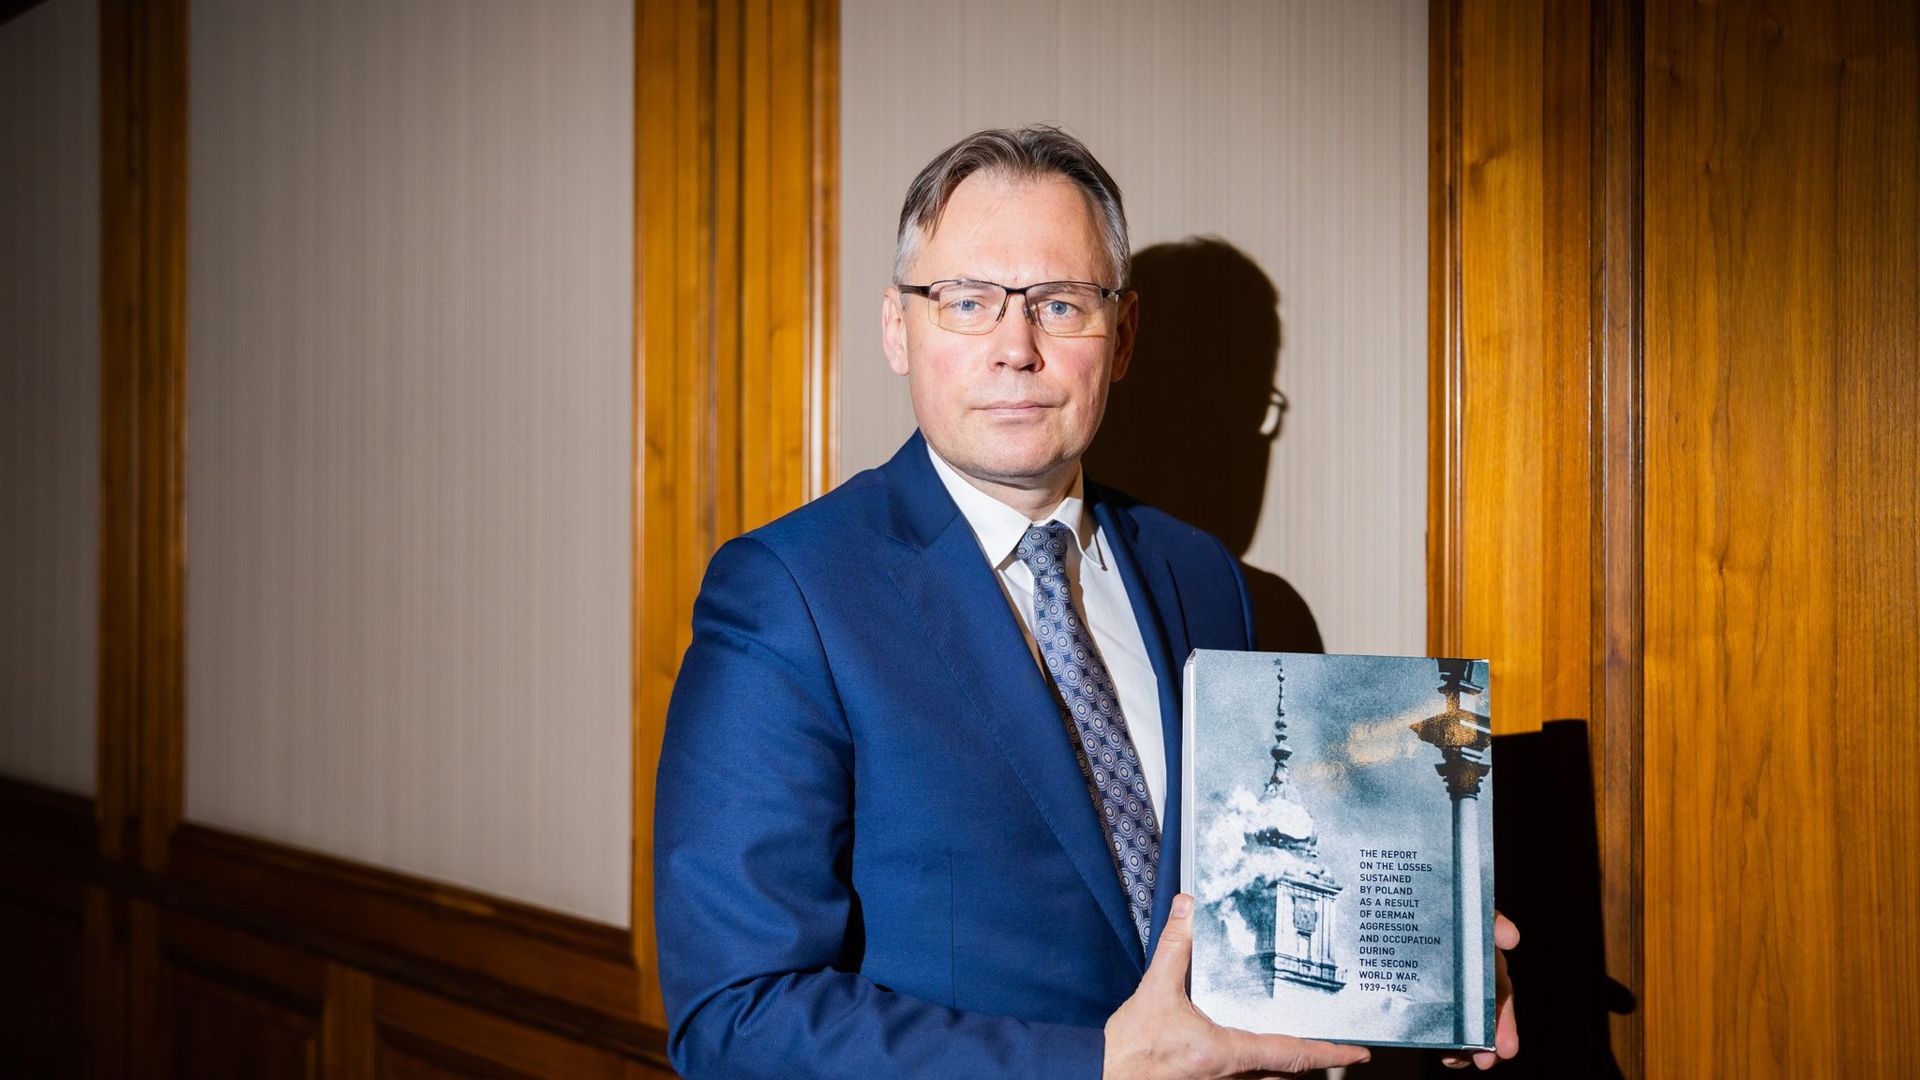 Arkadiusz Mularczyk, Vize-Außenminister von Polen, präsentiert beim dpa-Interview den Bericht über Reparationsforderungen Polens an Deutschland.